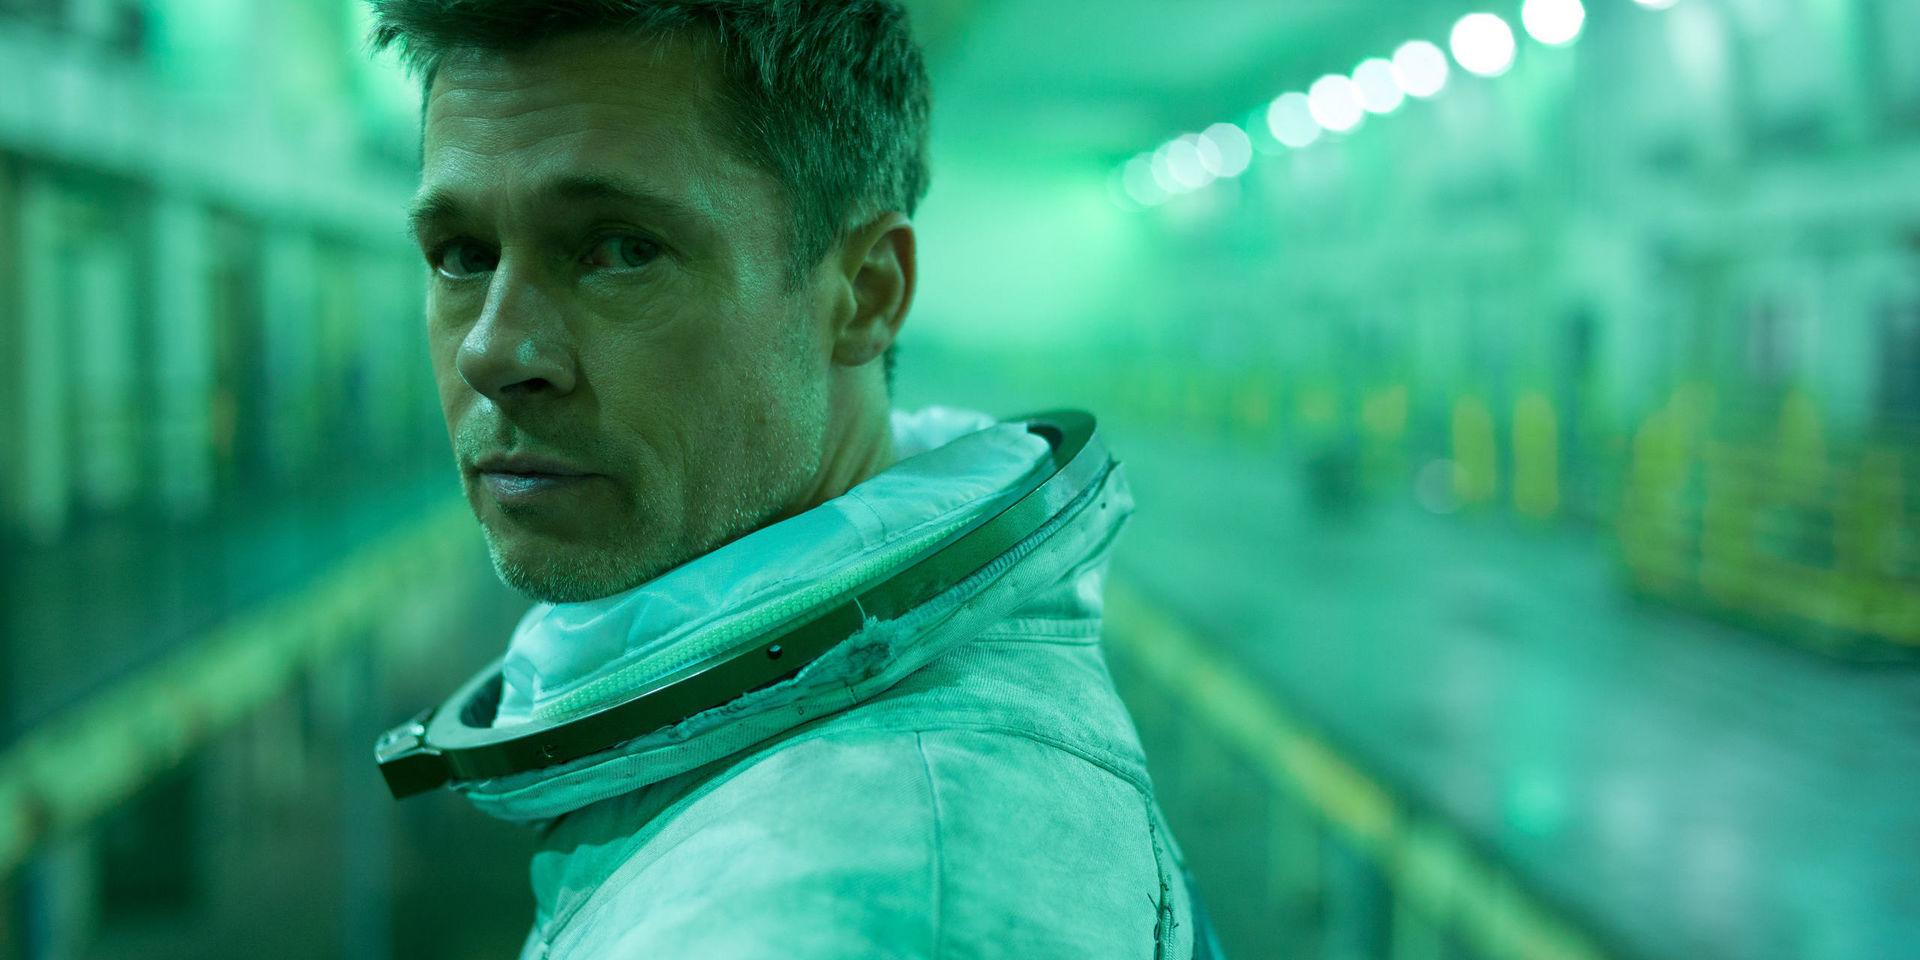 Astronauten Roy McBride (Brad Pitt) letar efter sin pappa i 'Ad astra' och upptäcker hemligheter om både jorden och människans existens. Pressbild.